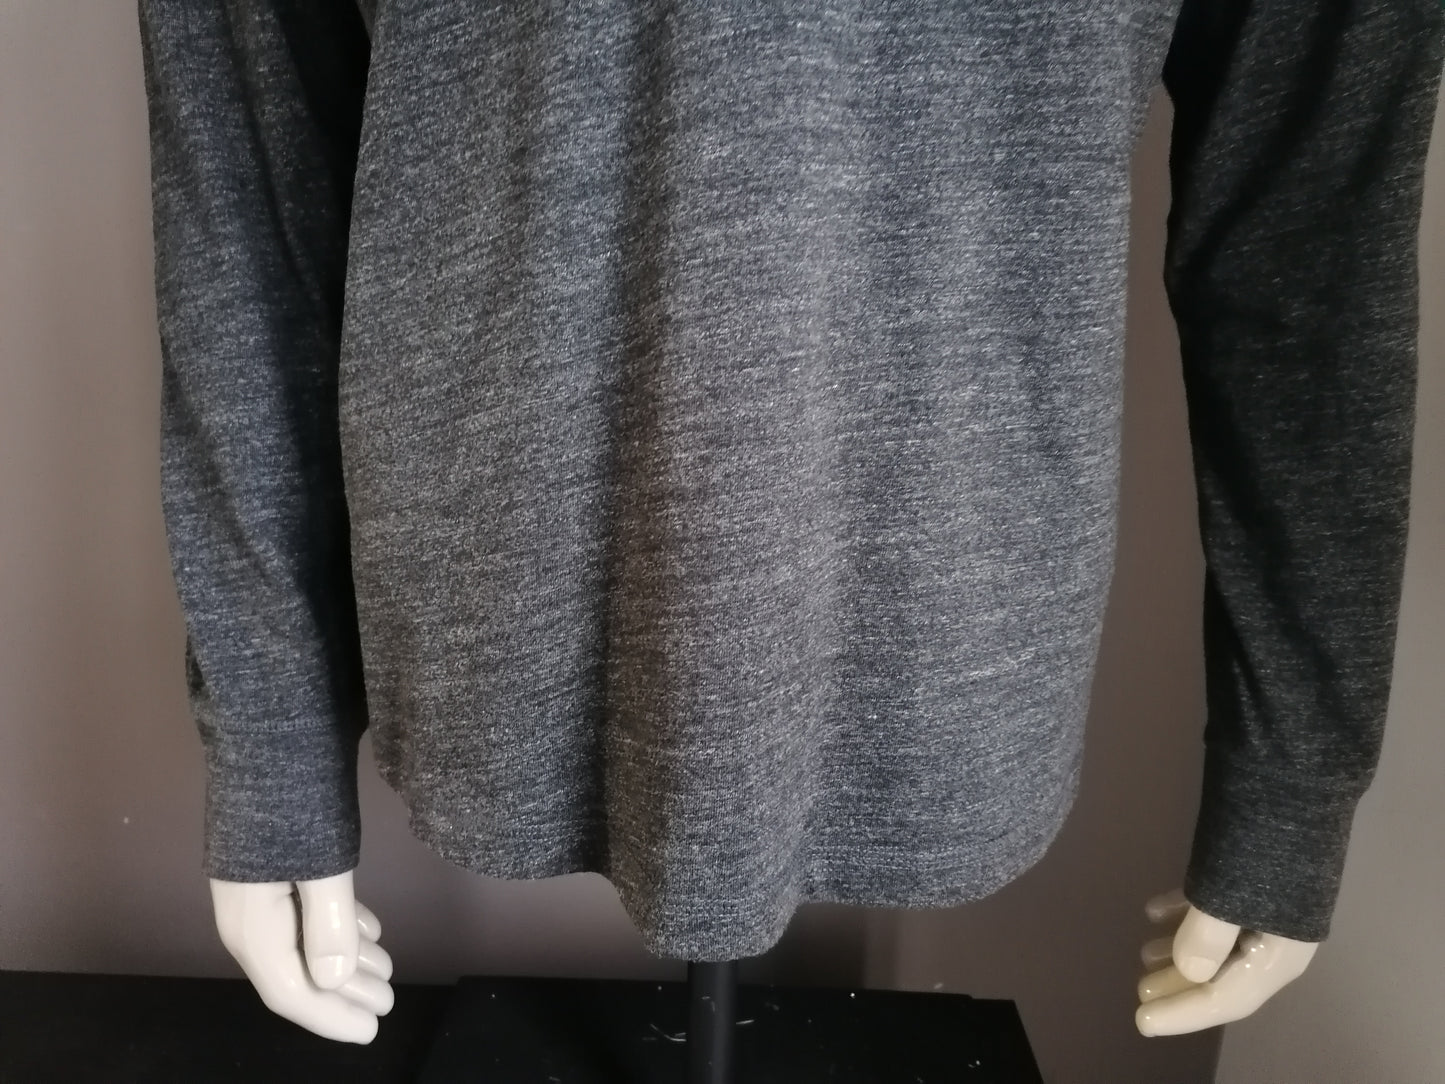 Gap Dünner Pullover mit Knöpfen. Grau gemischt. Größe xl.